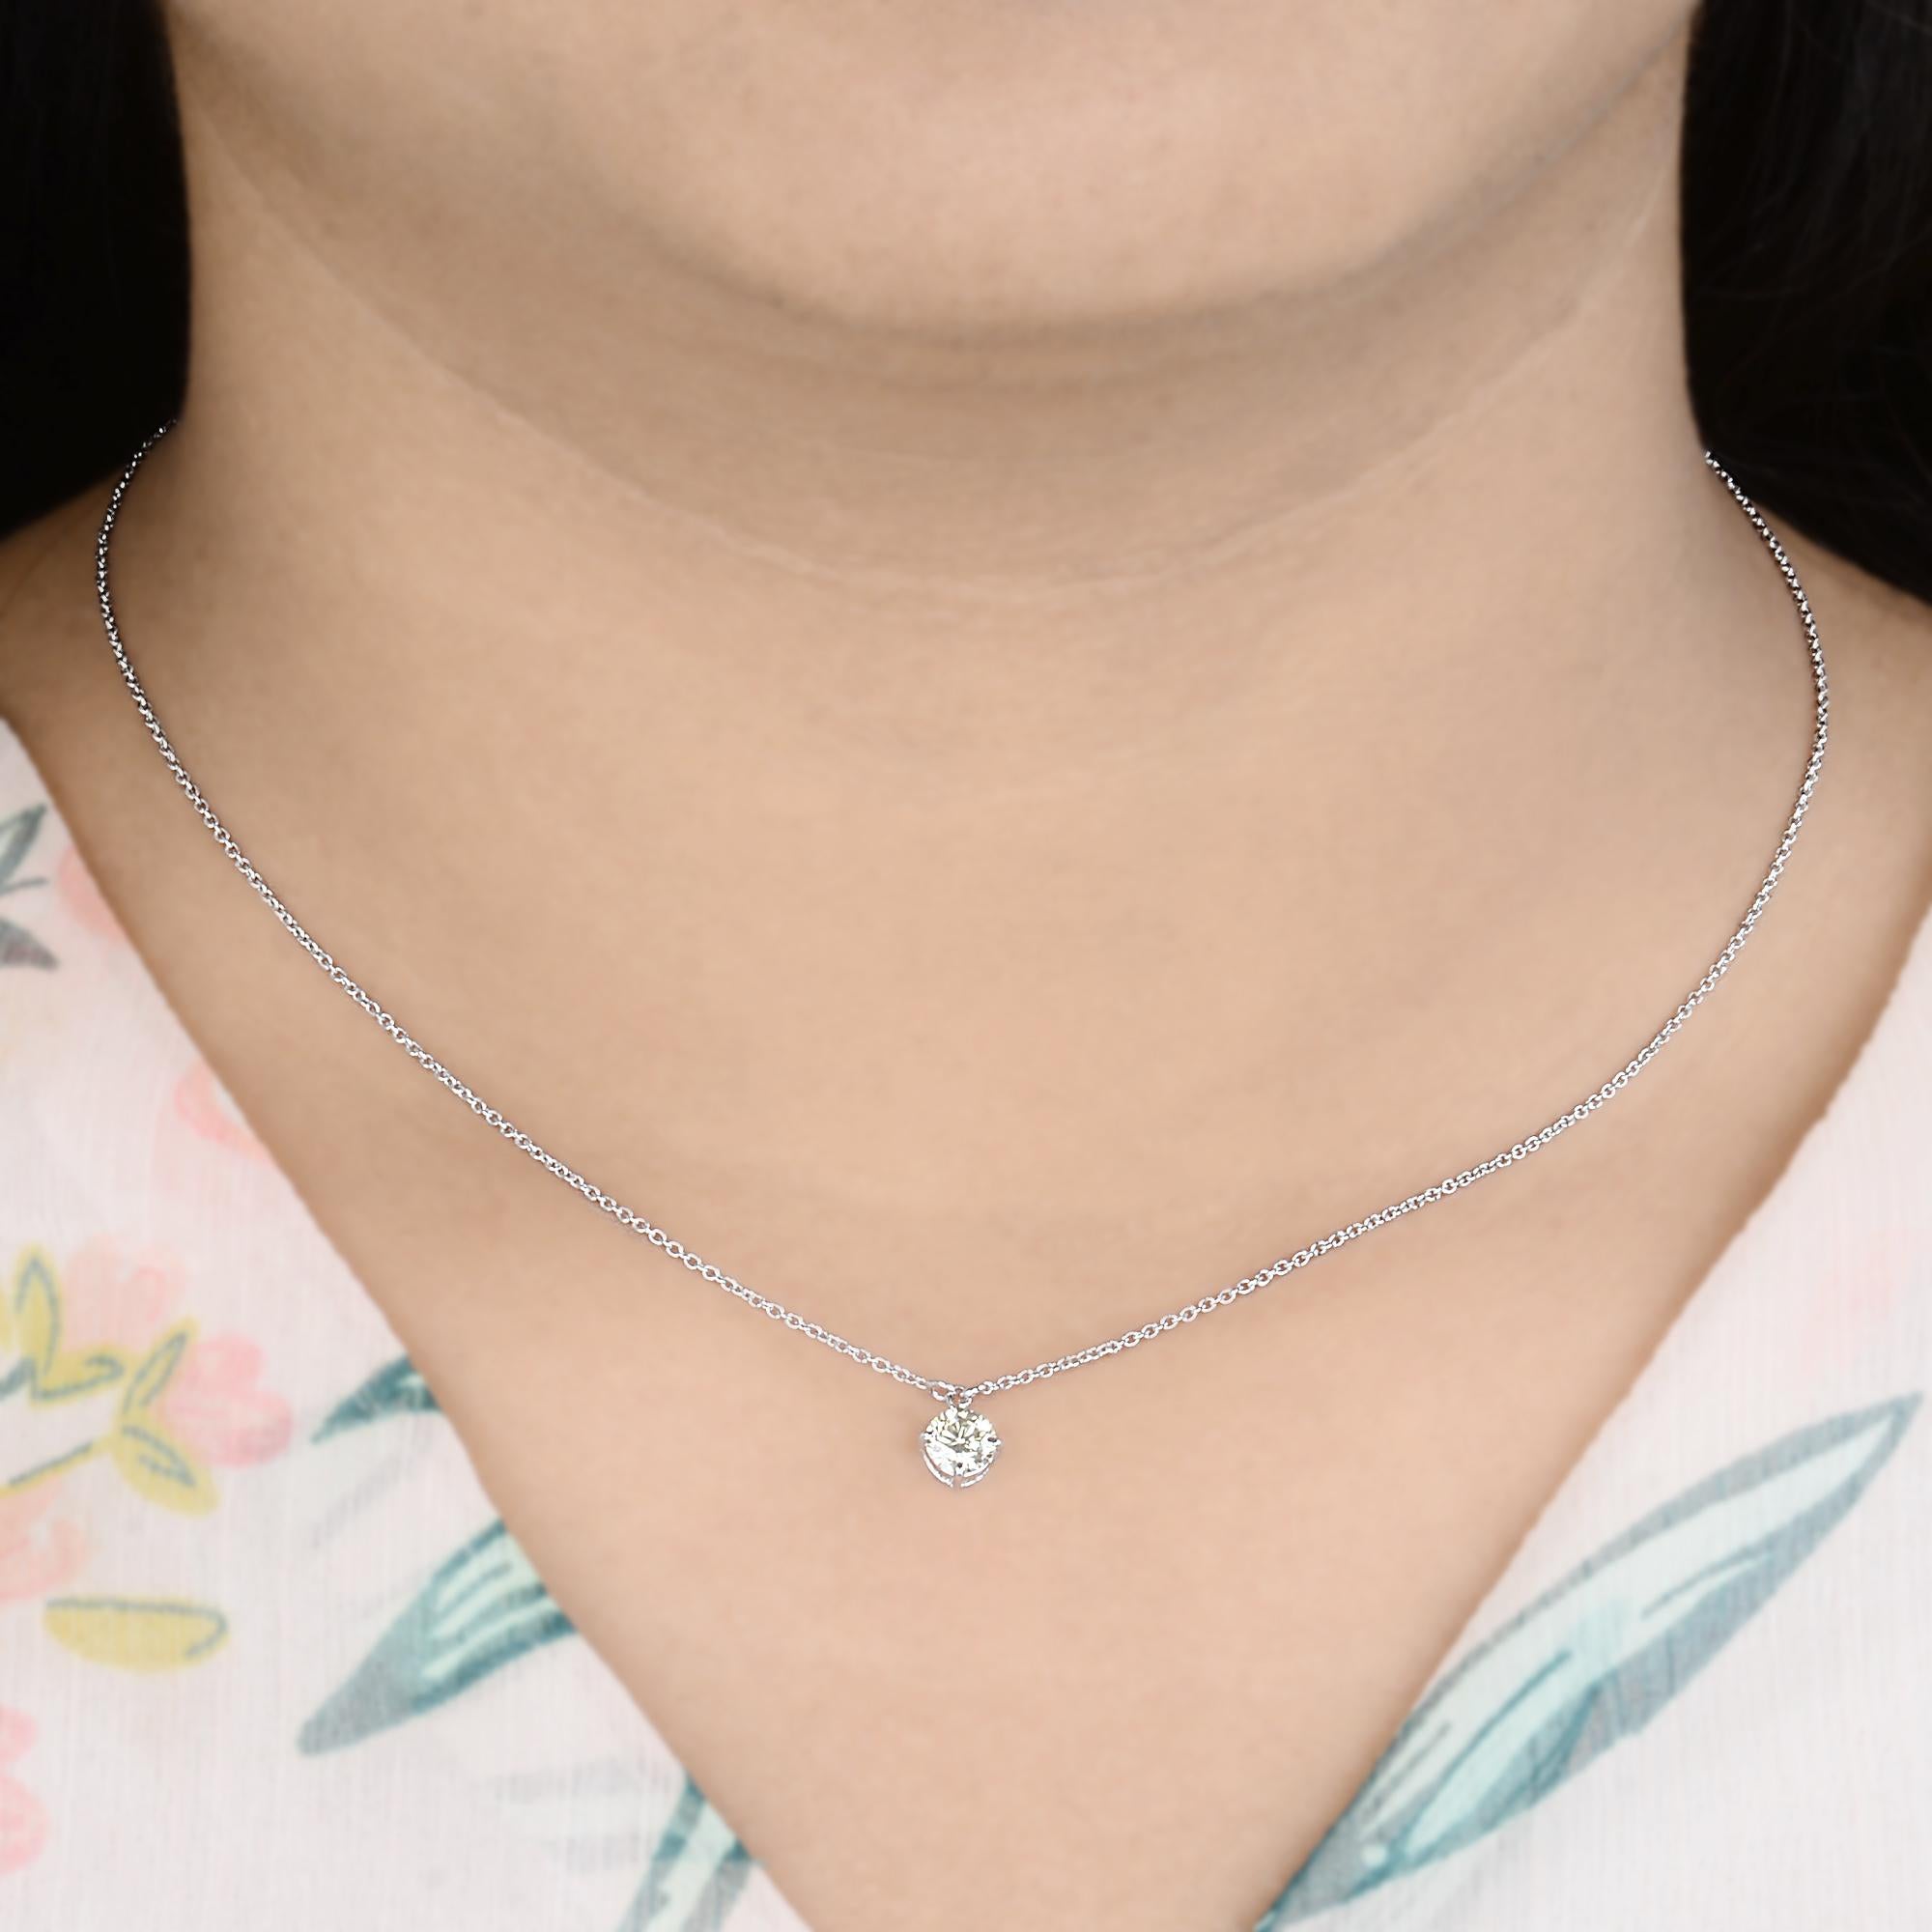 Ce collier pendentif à breloques en diamant solitaire est une pièce polyvalente qui passe sans effort du jour à la nuit. Il ajoute une touche d'élégance raffinée à n'importe quelle tenue, ce qui le rend adapté aussi bien aux occasions formelles